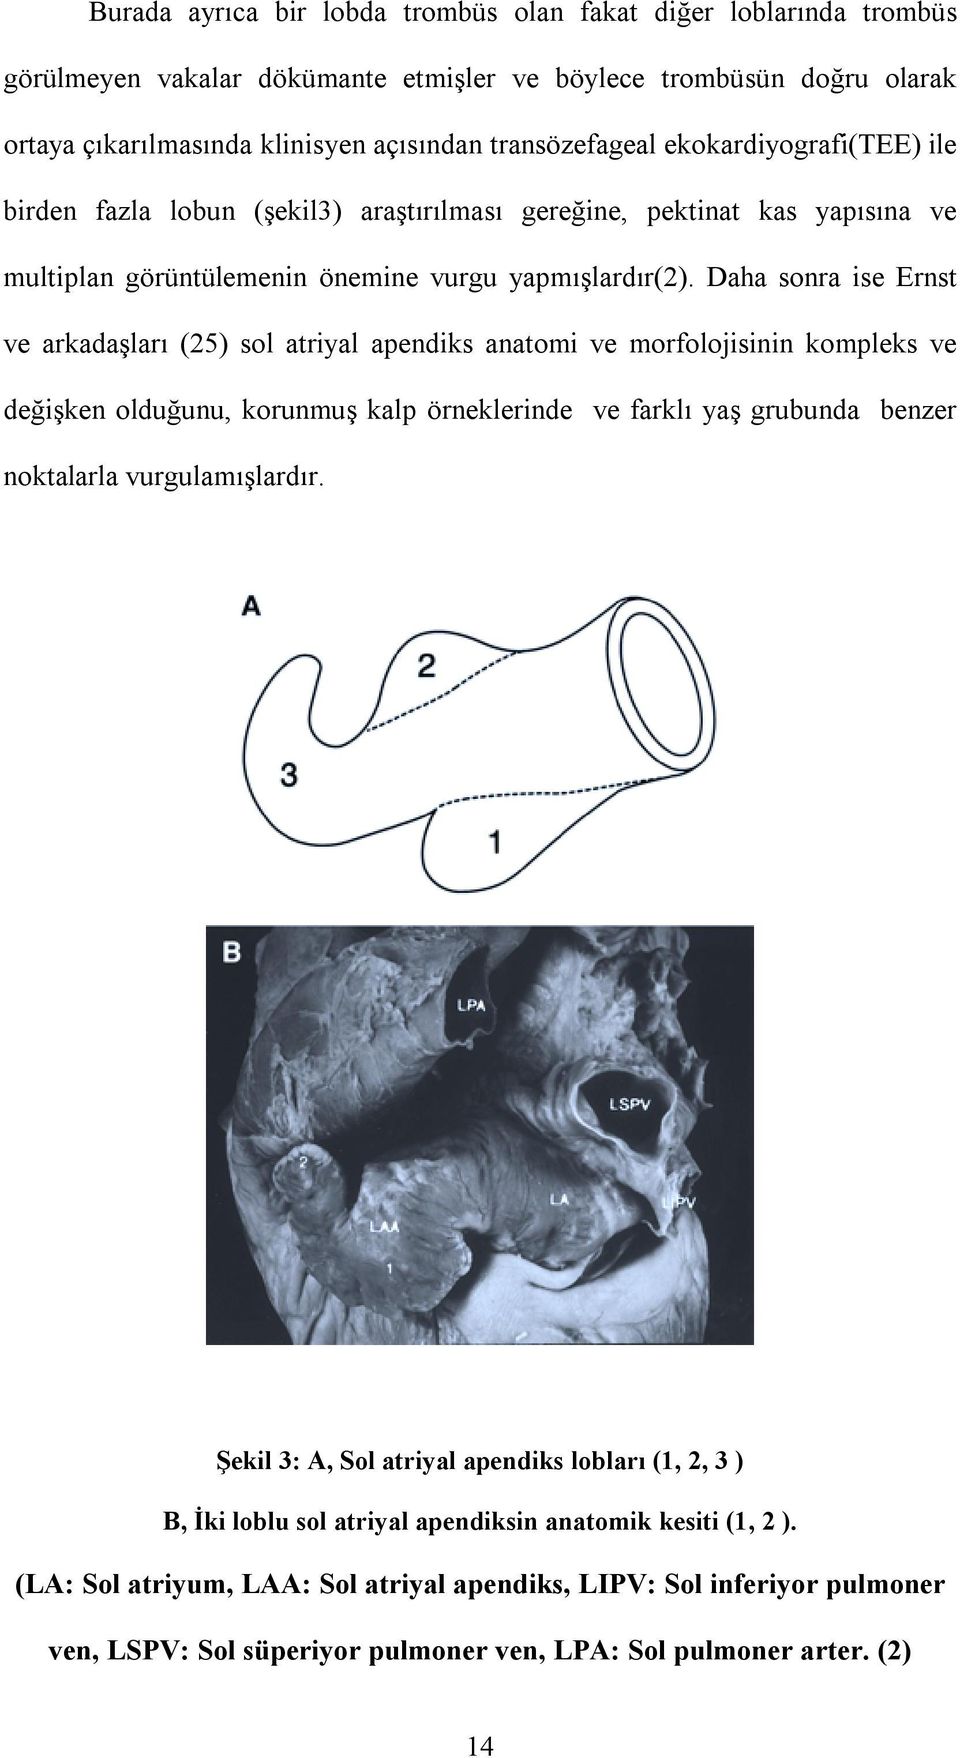 Daha sonra ise Ernst ve arkadaşlarõ (25) sol atriyal apendiks anatomi ve morfolojisinin kompleks ve değişken olduğunu, korunmuş kalp örneklerinde ve farklõ yaş grubunda benzer noktalarla